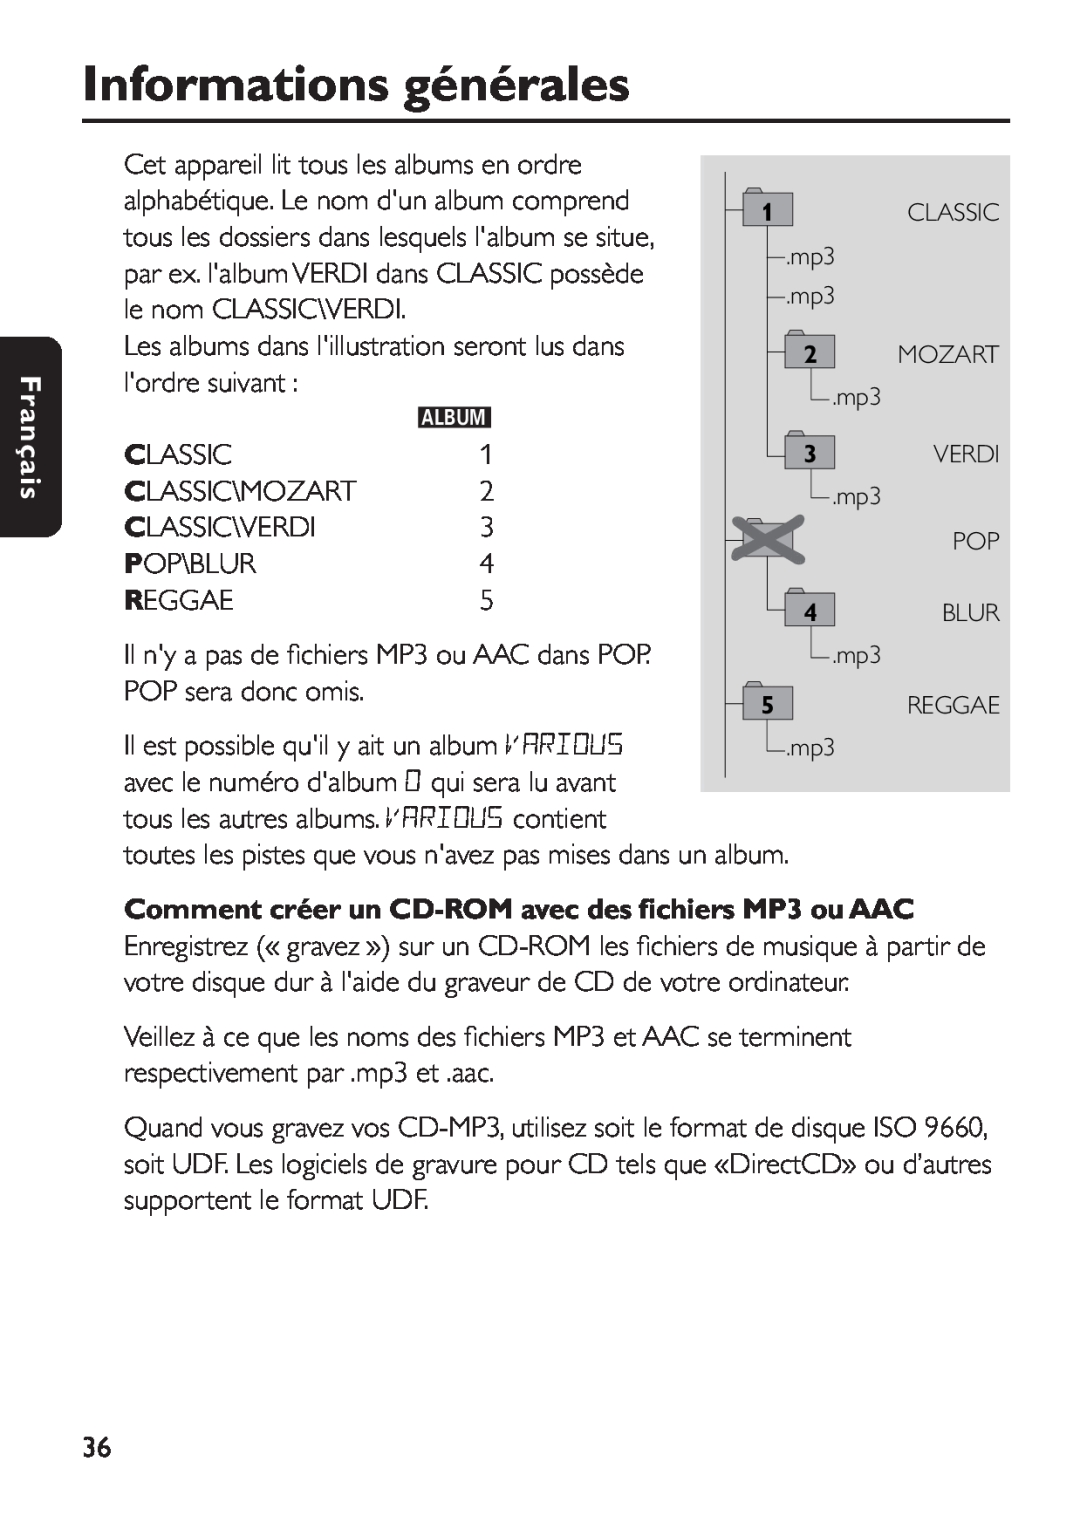 Philips EXP 501/00 manual Comment créer un CD-ROM avec des ﬁchiers MP3 ou AAC, Informations générales, Français 